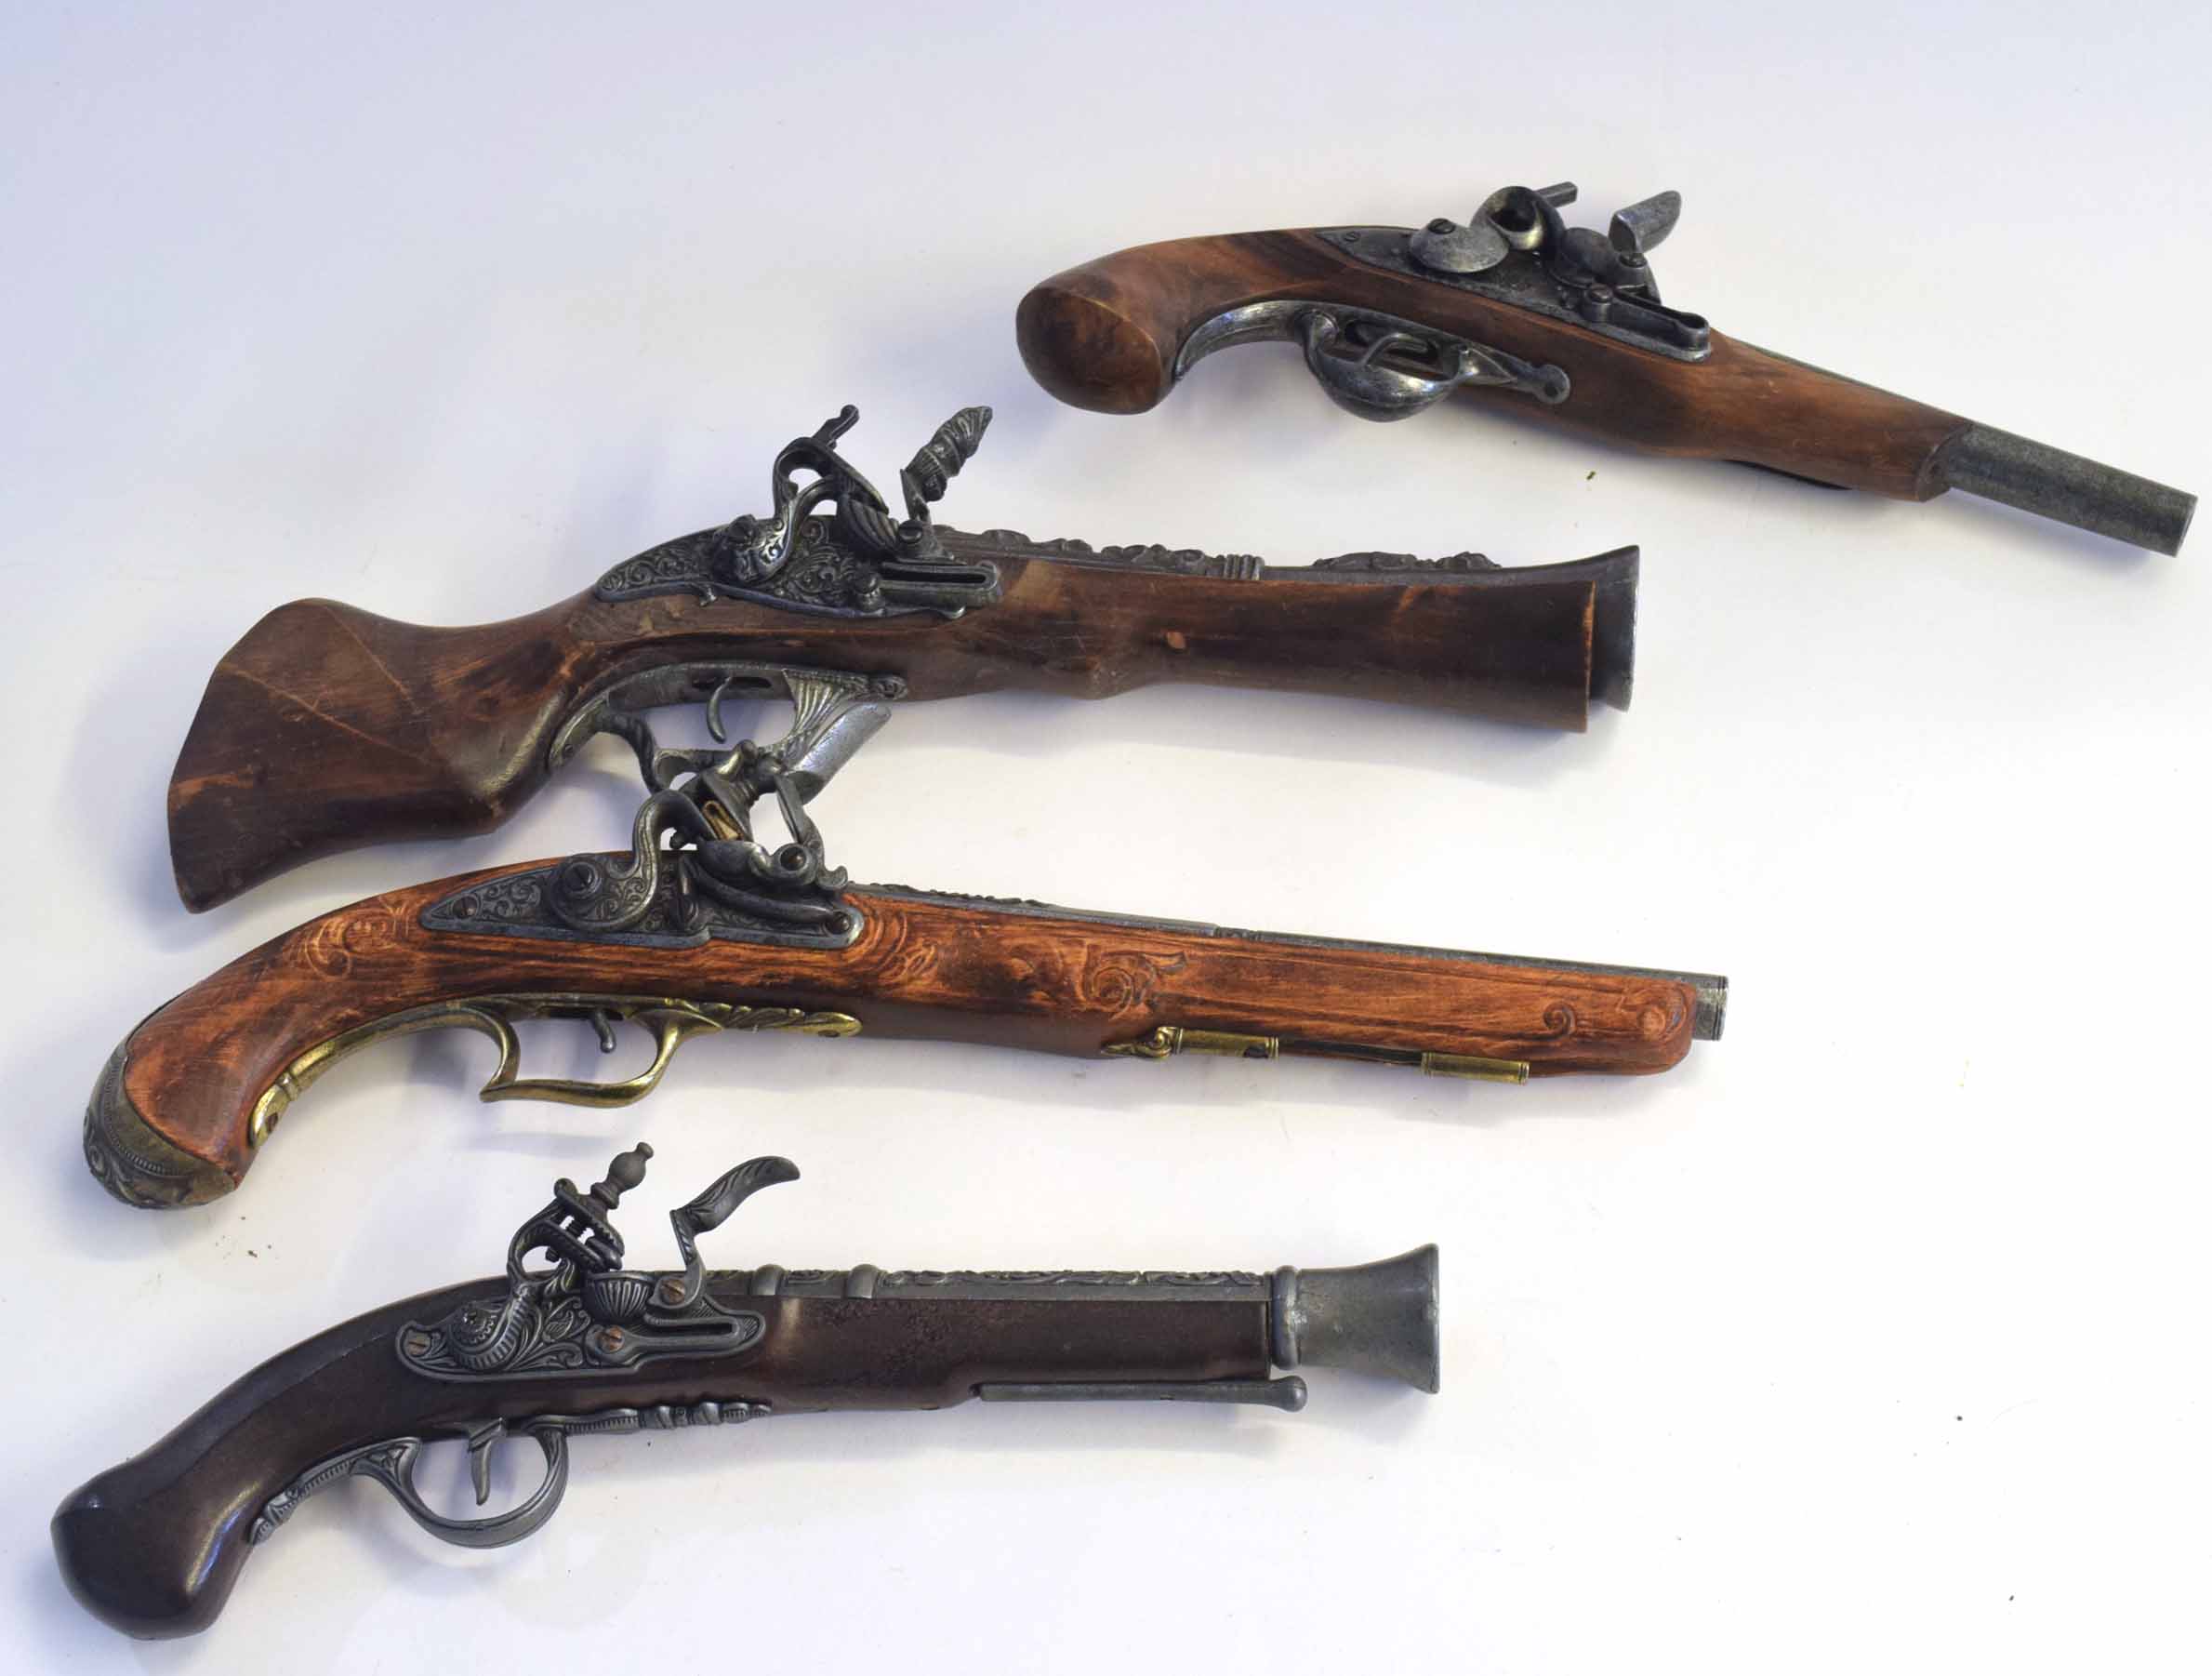 Four replica prop flintlock pistols